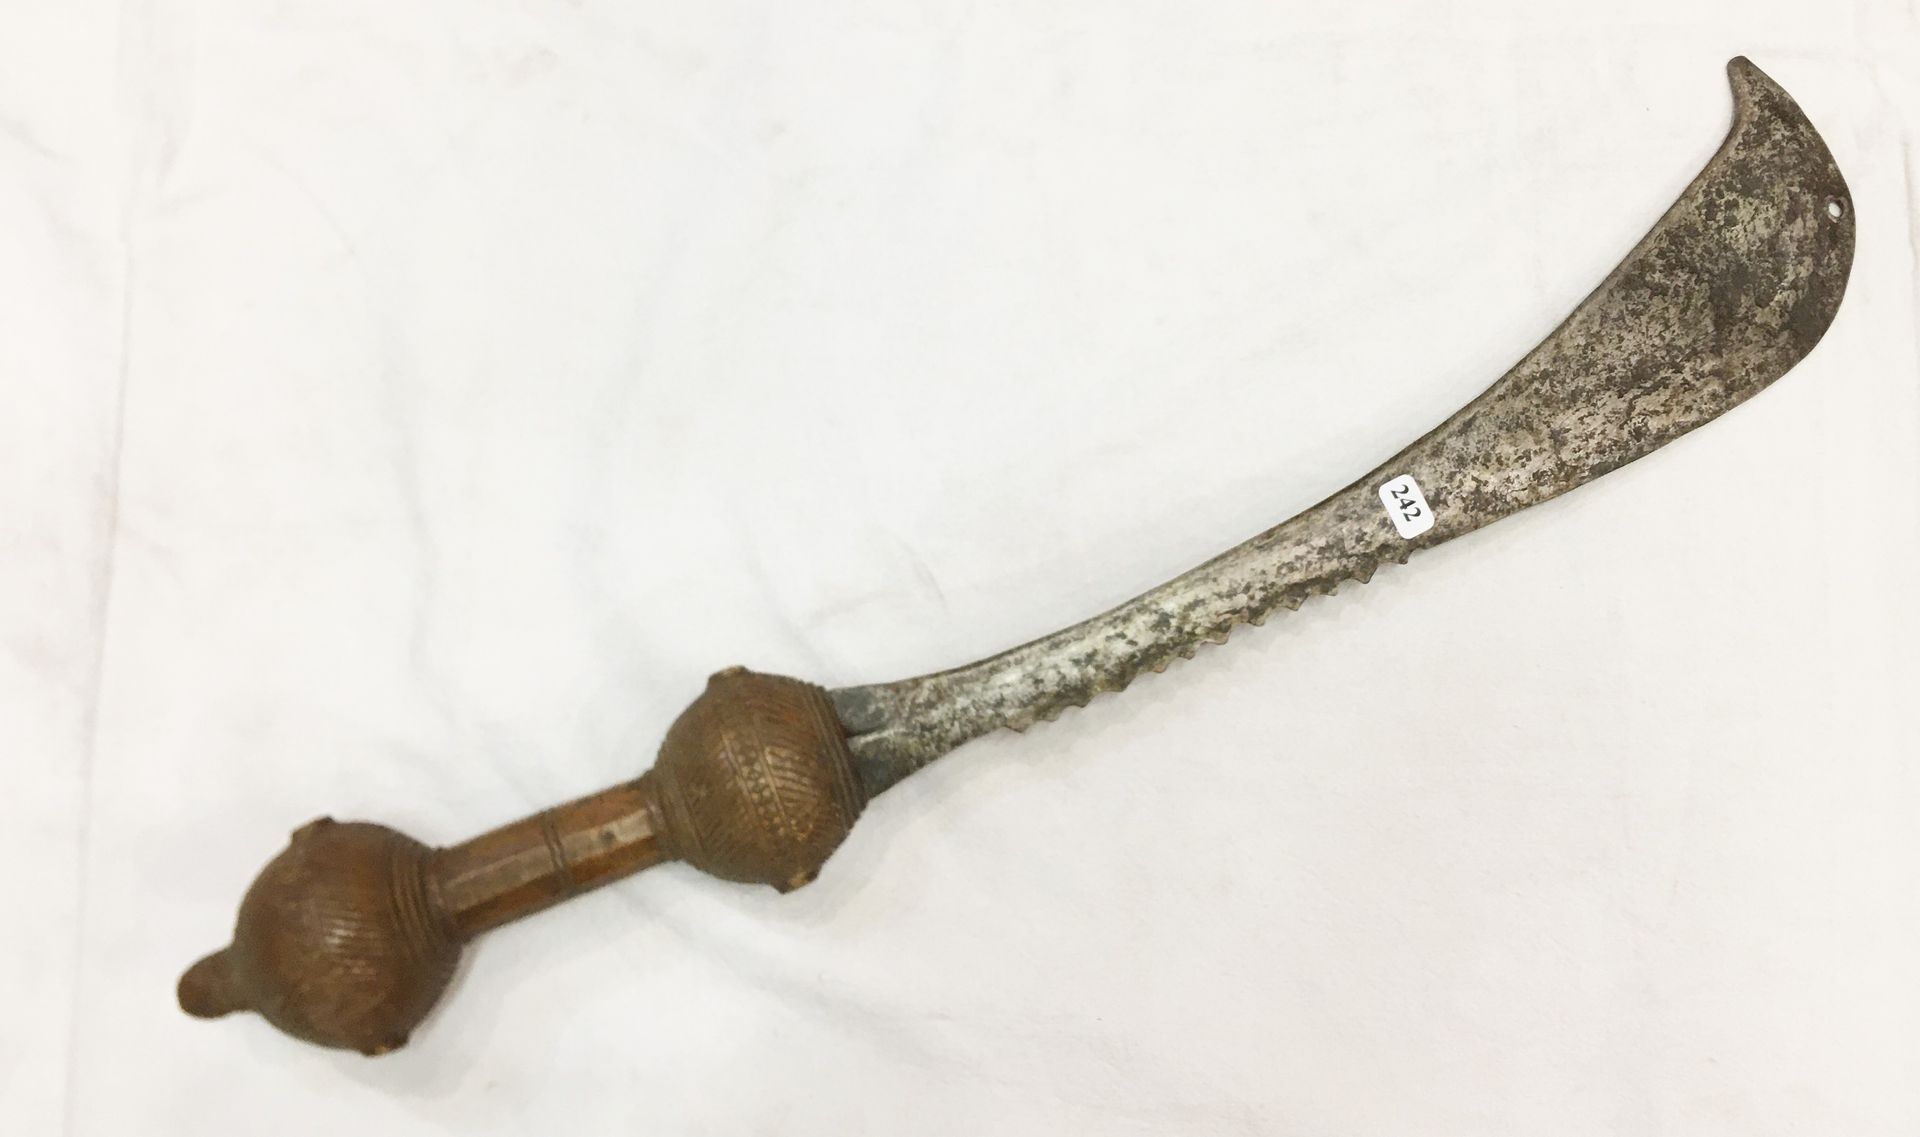 Null 阿散蒂仪式用的剑。加纳，铁和木材。雕刻的手柄原本是用金箔覆盖的。使用时的旧斑纹。长：55厘米